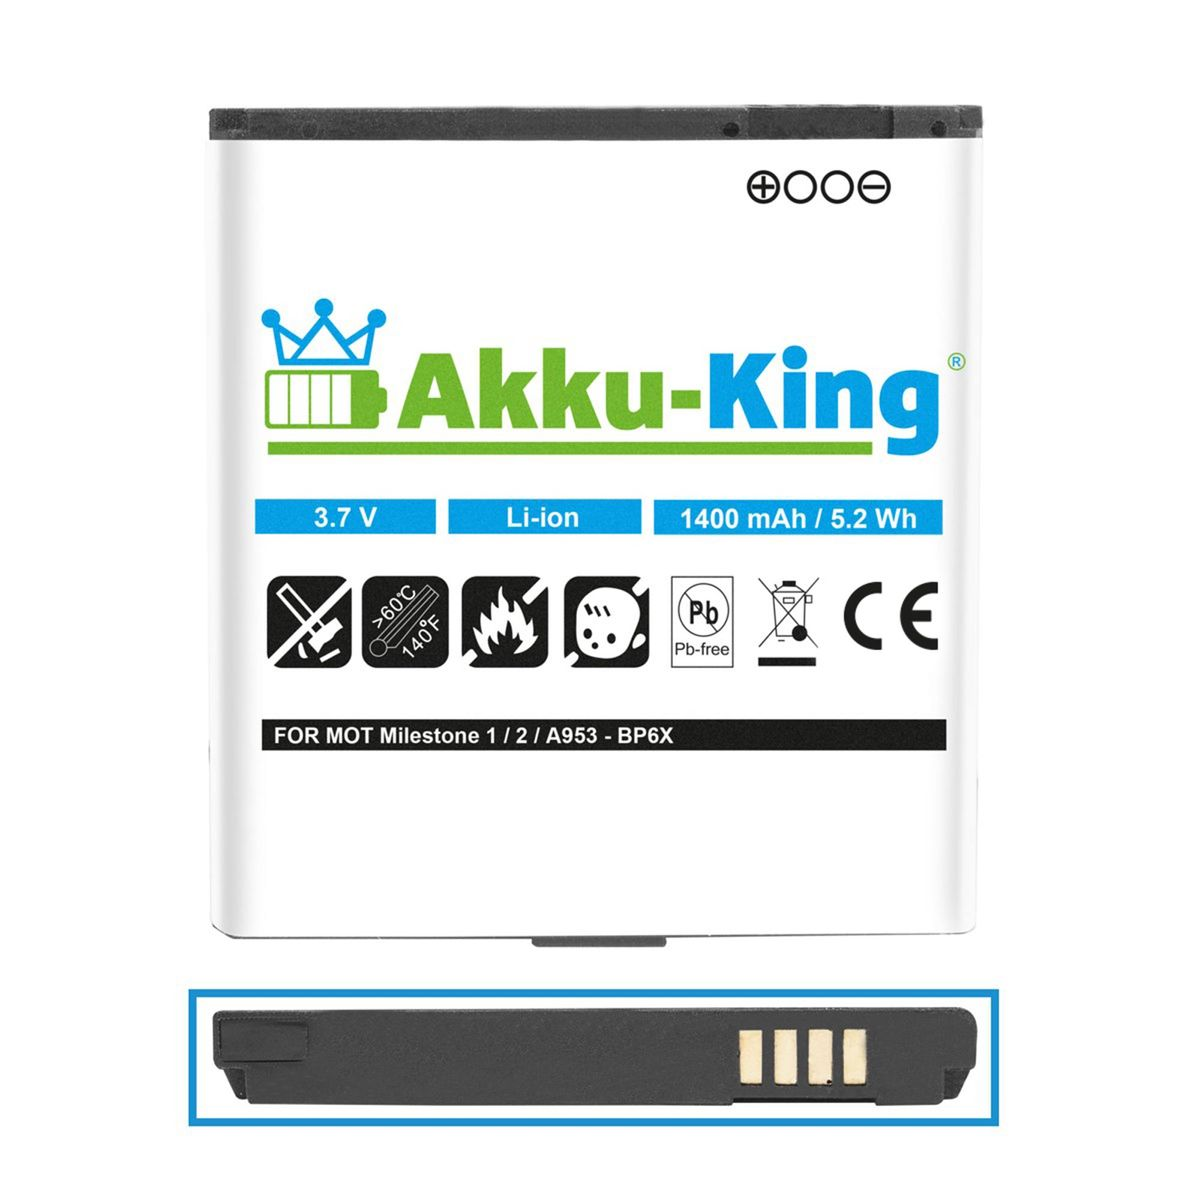 AKKU-KING Akku kompatibel mit Volt, BP6X Handy-Akku, 1400mAh Motorola Li-Ion 3.7